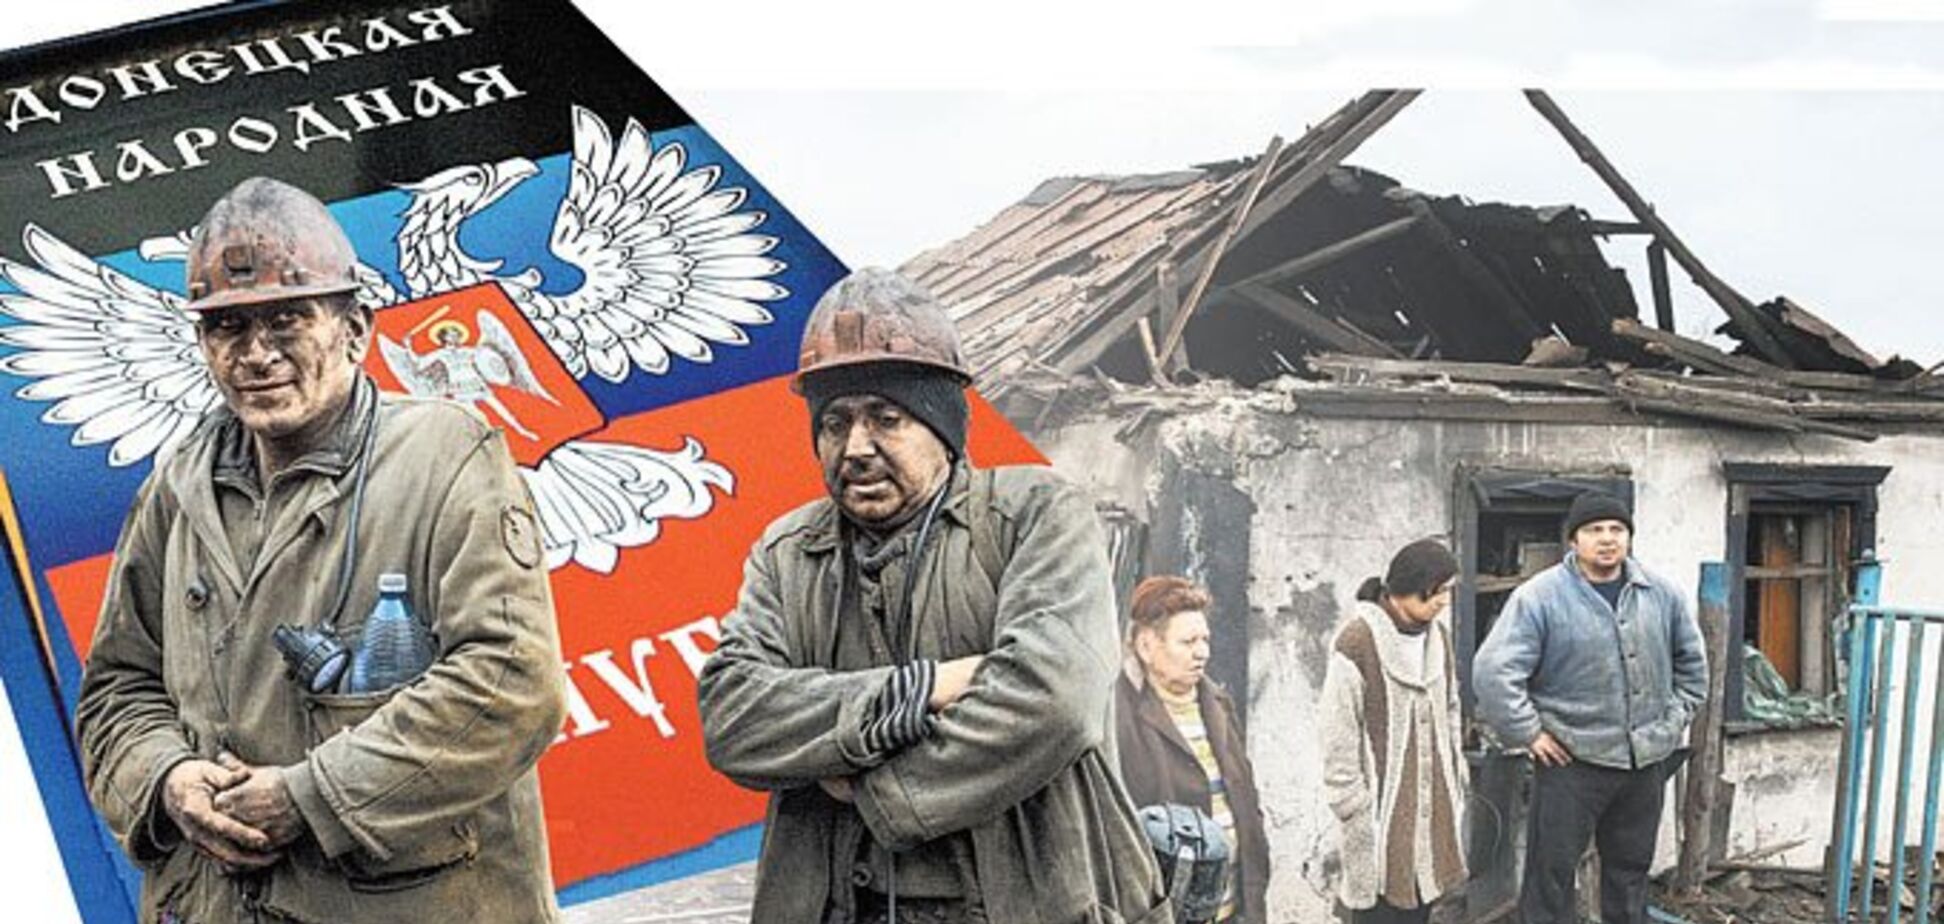 Инсайд из Донецка: Путин делает ставку на 'гражданскую войну'